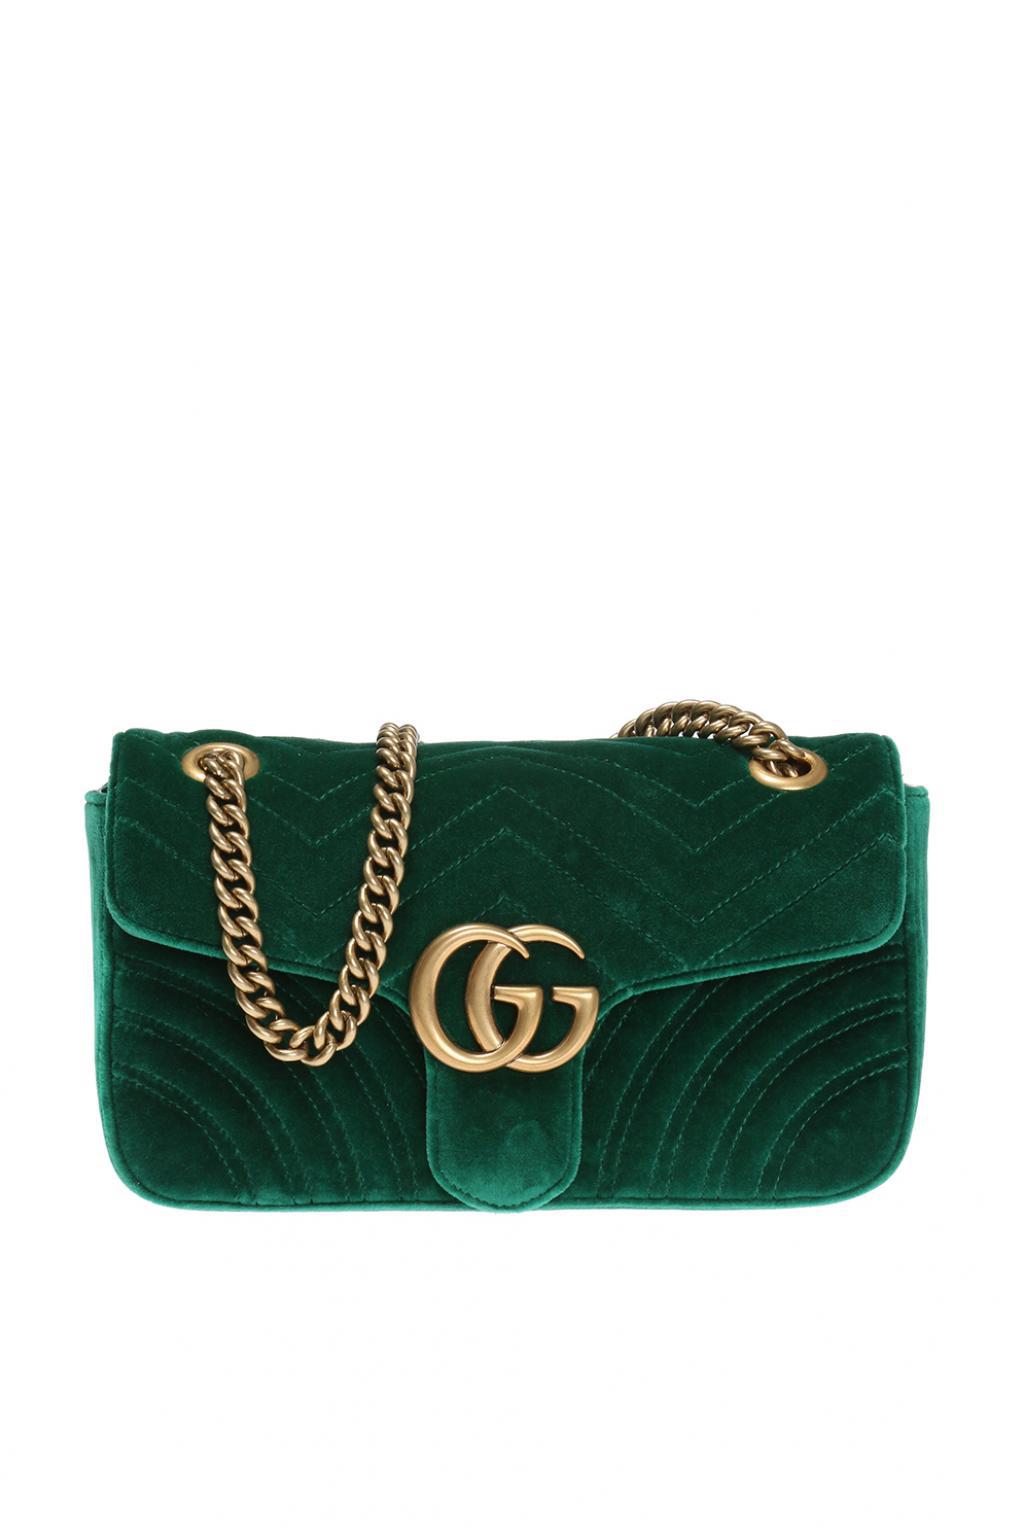 Gucci Green Marmont Velvet Shoulder Bag - Lyst